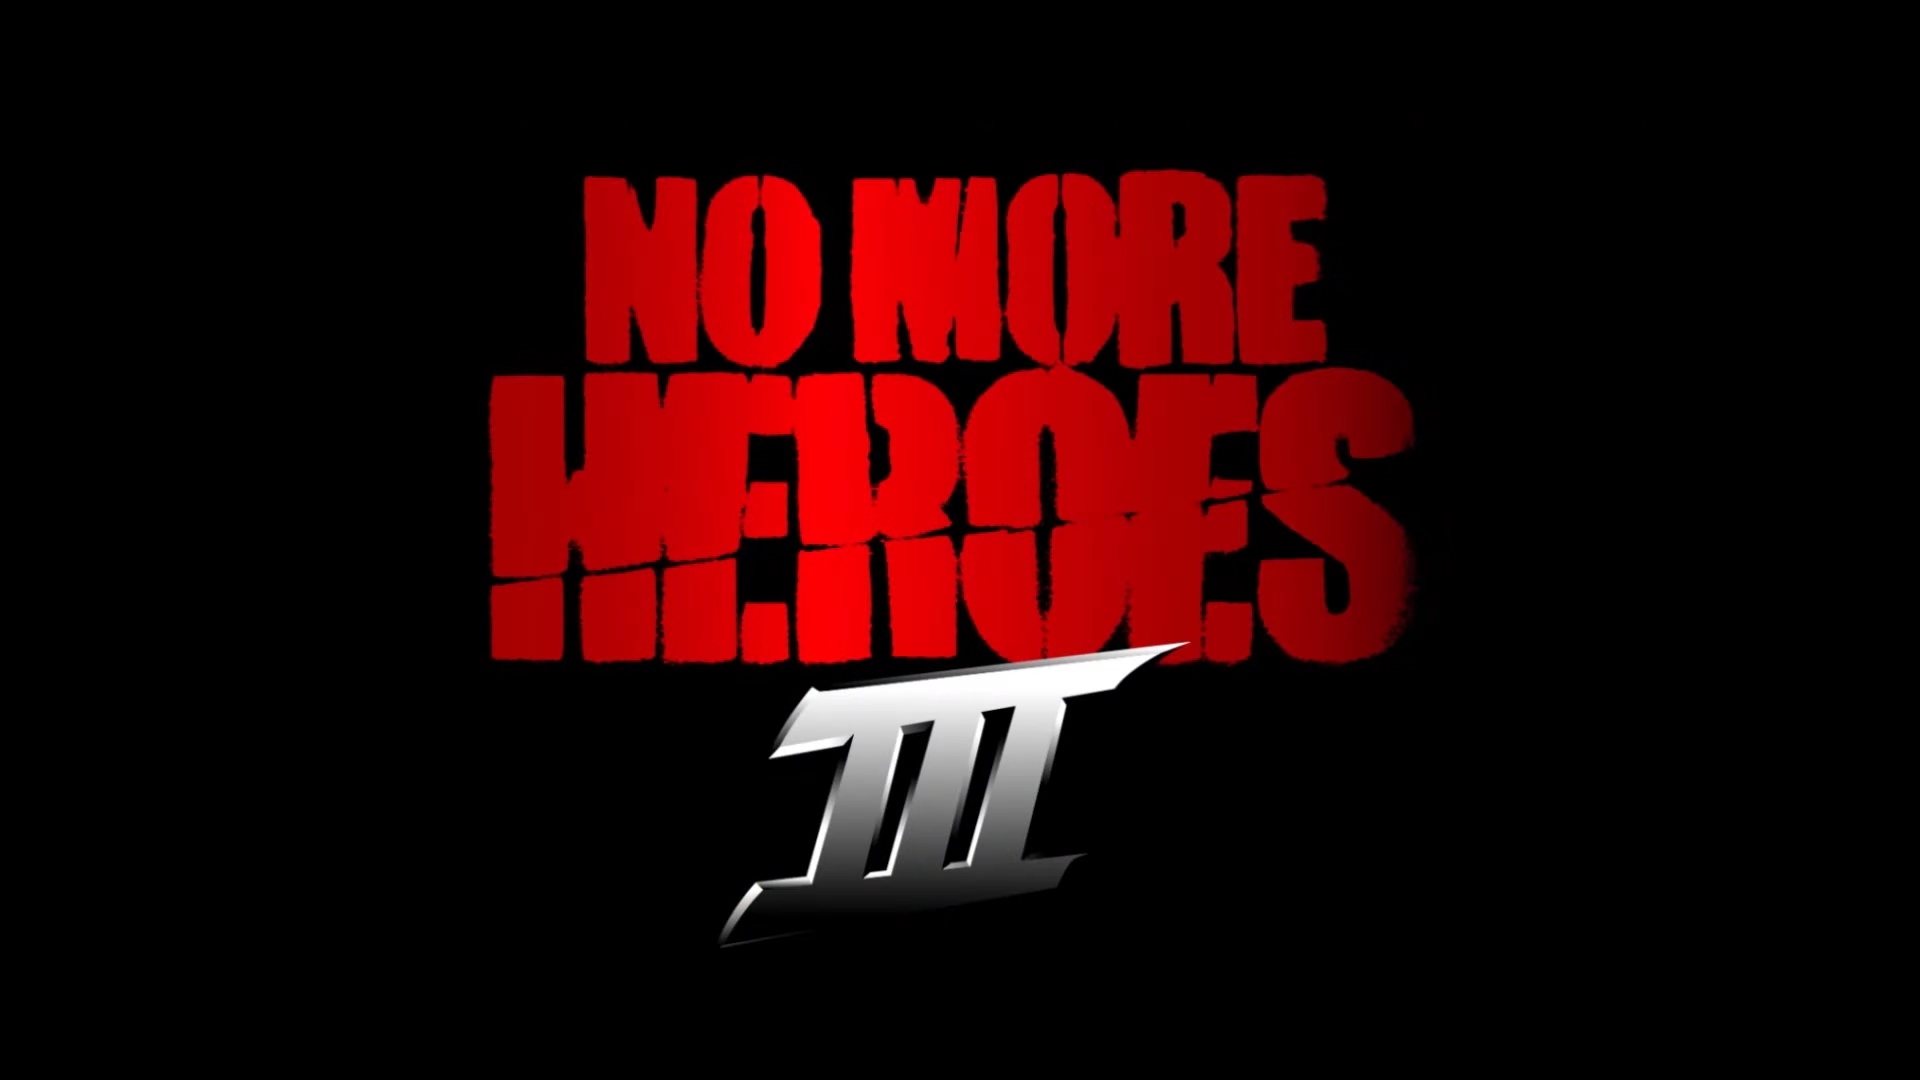 異色英雄遊戲最新作 英雄不再3 開發受肺炎疫情影響延期至21 年上市 No More Heroes 3 巴哈姆特